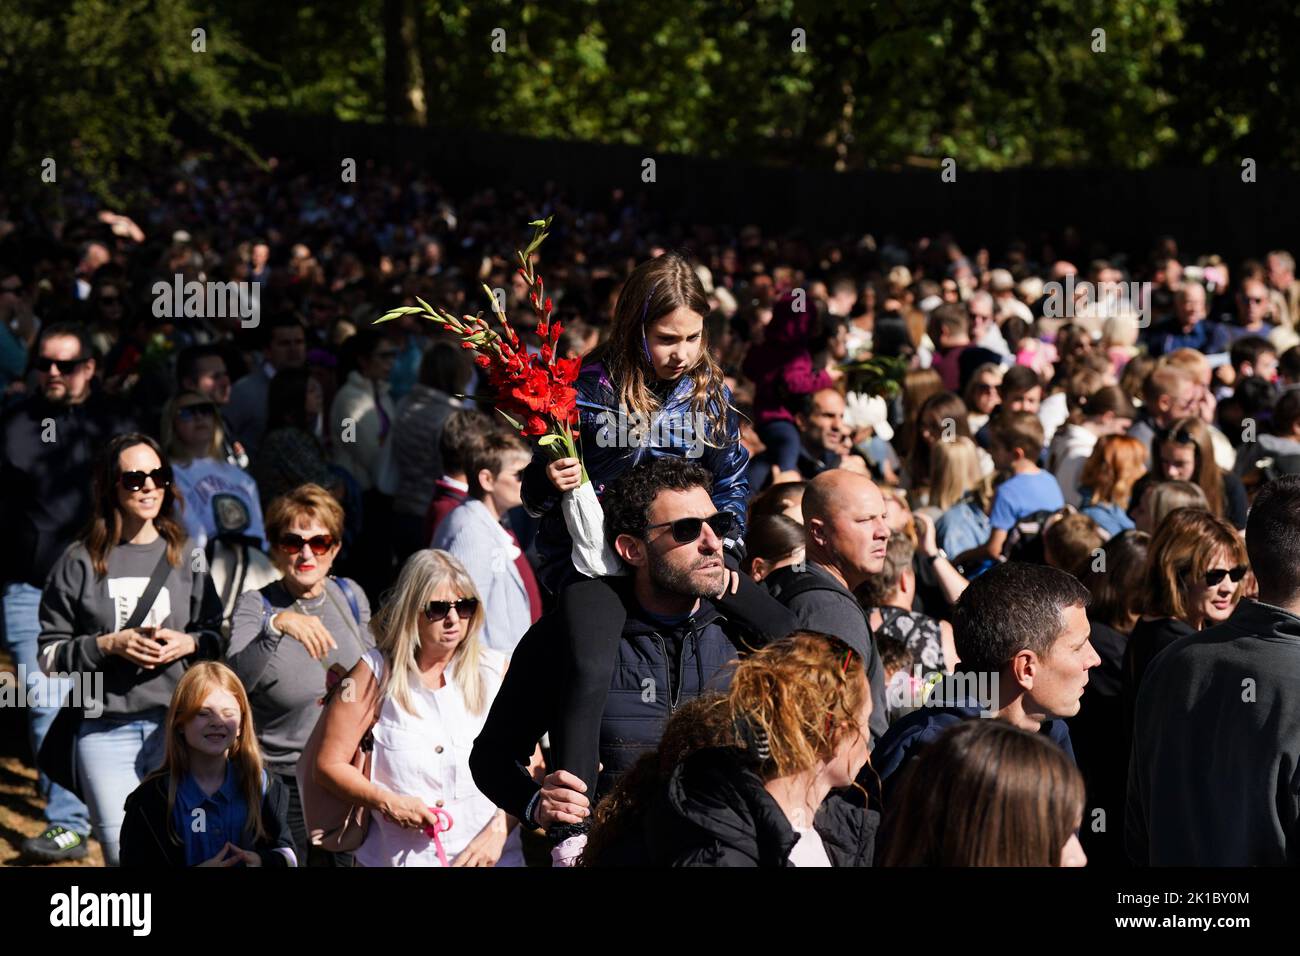 Miembros de la cola pública para obtener acceso a Green Park en Londres, mientras esperan para depositar flores y homenajes a la reina Isabel II antes de su funeral el lunes. Fecha de la foto: Sábado 17 de septiembre de 2022. Foto de stock